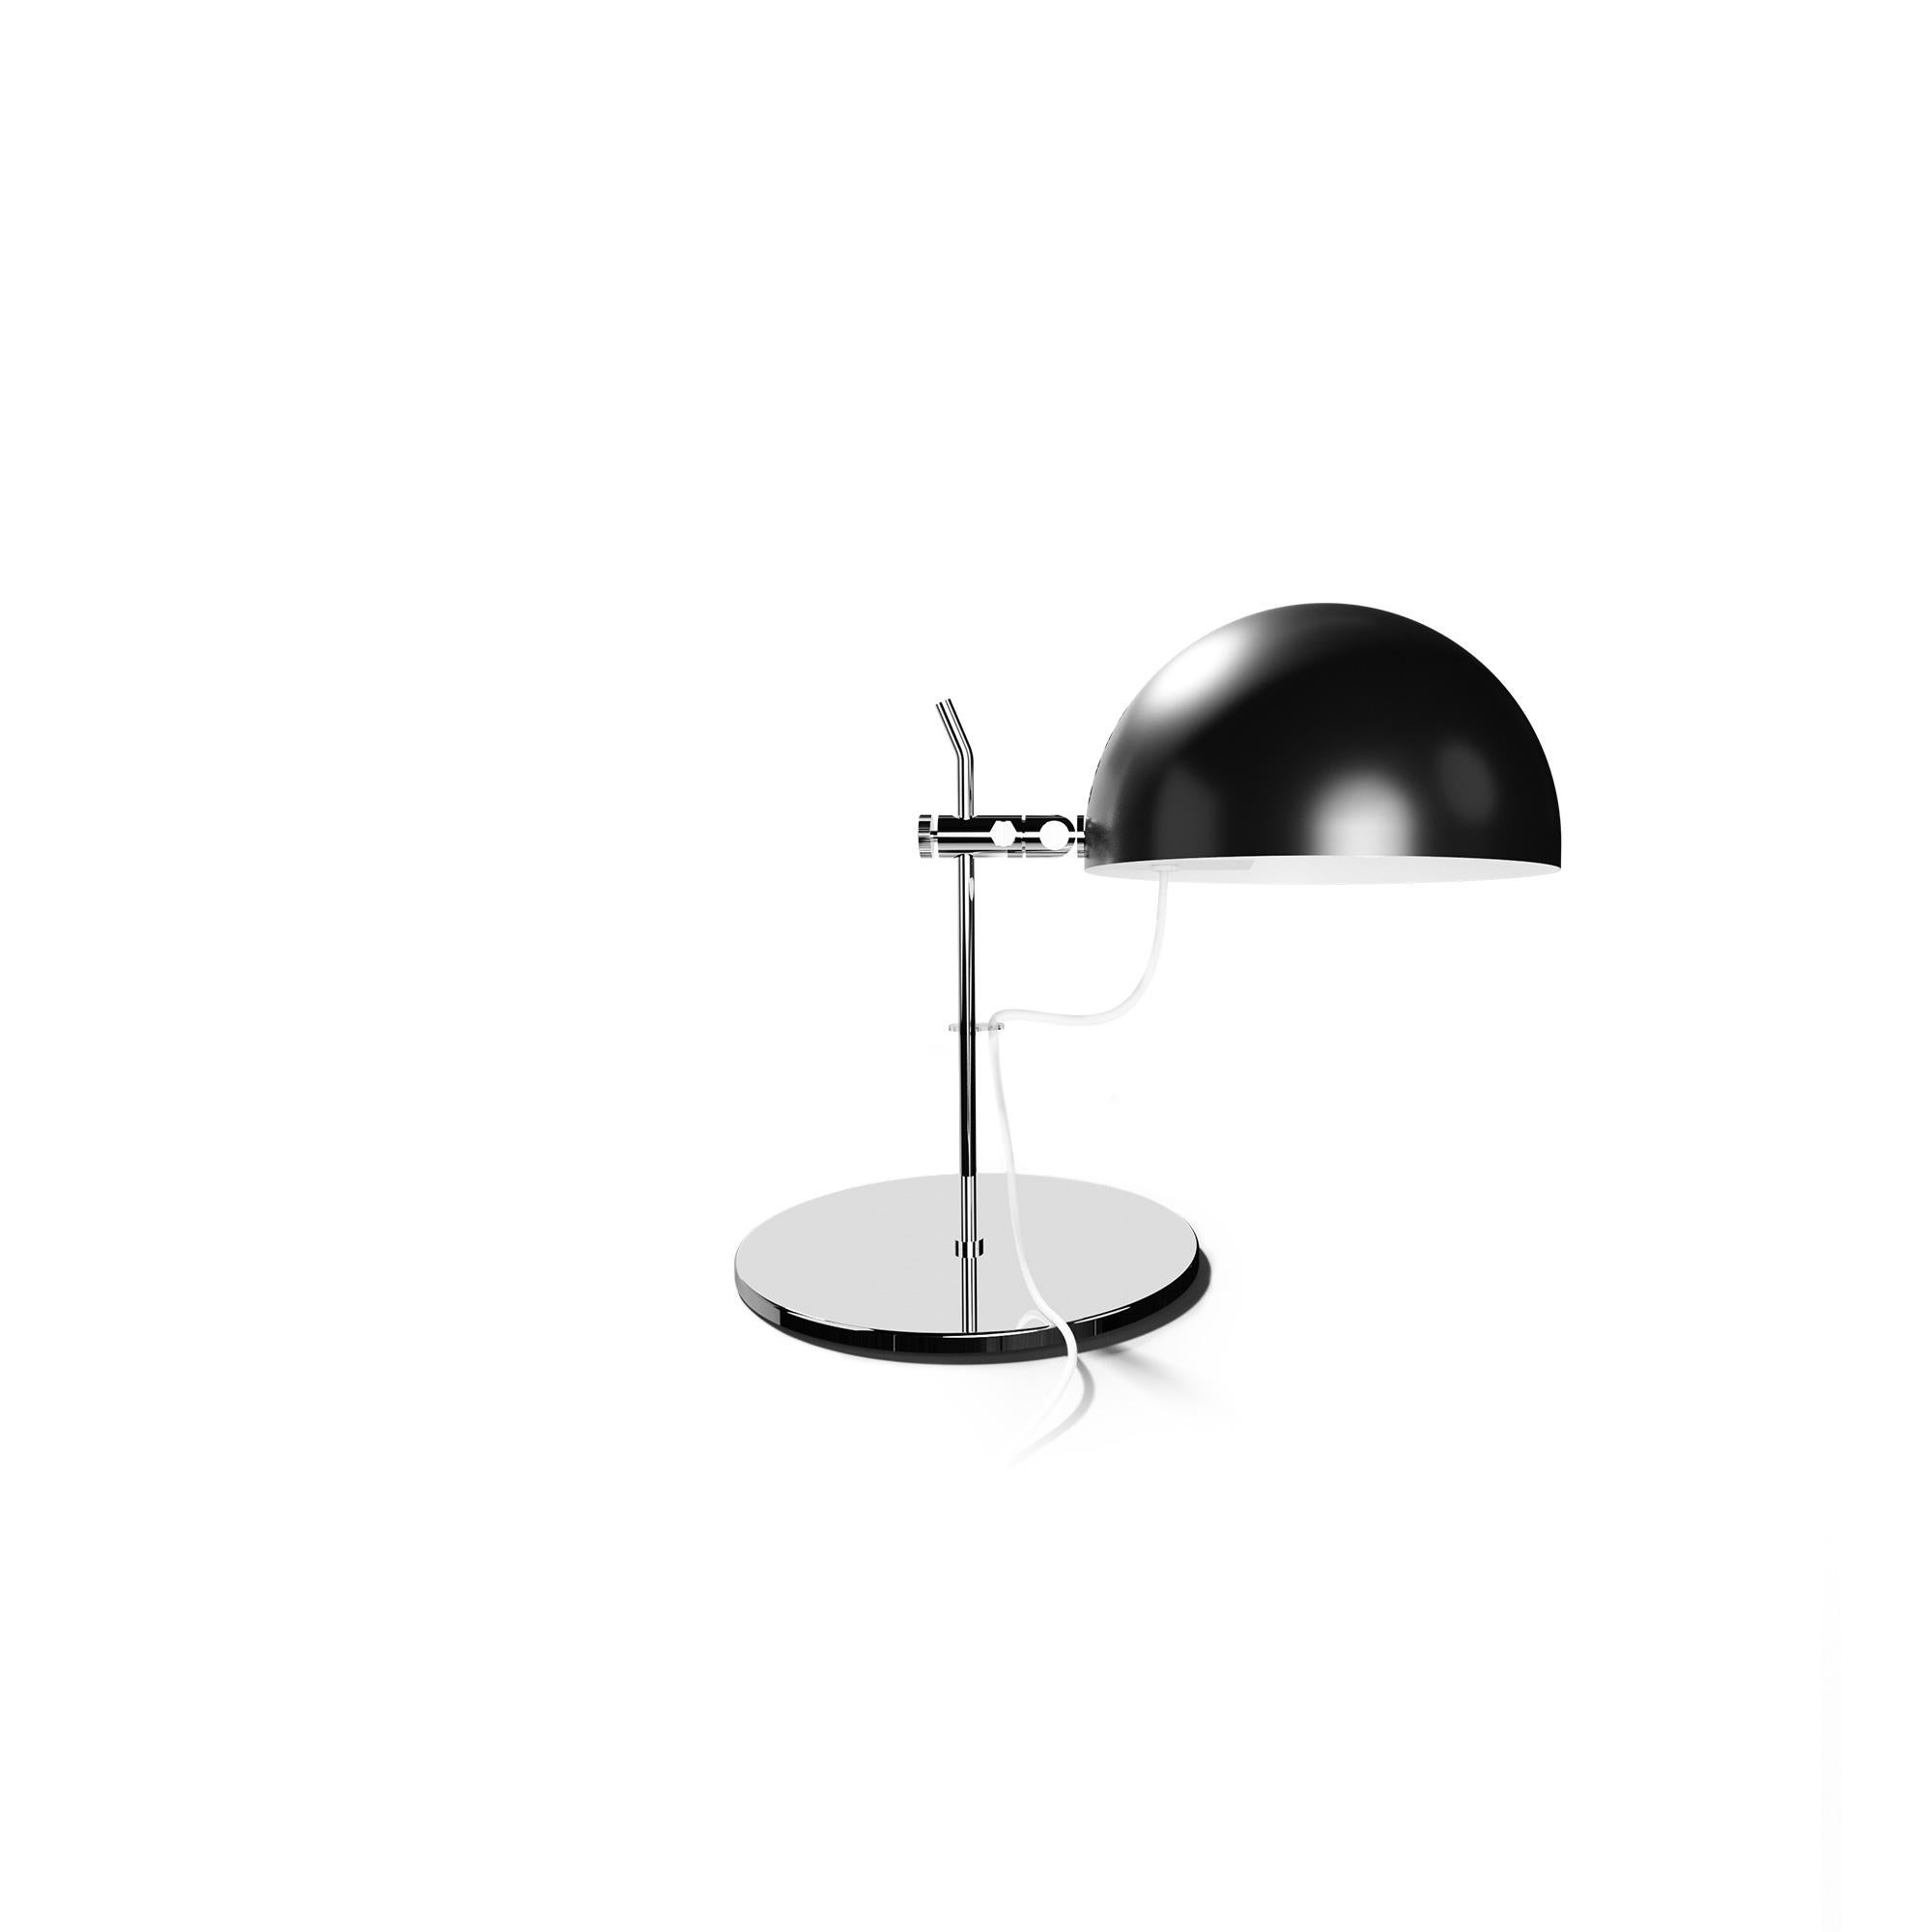 Alain Richard 'A21' Desk Lamp in Green for Disderot For Sale 6